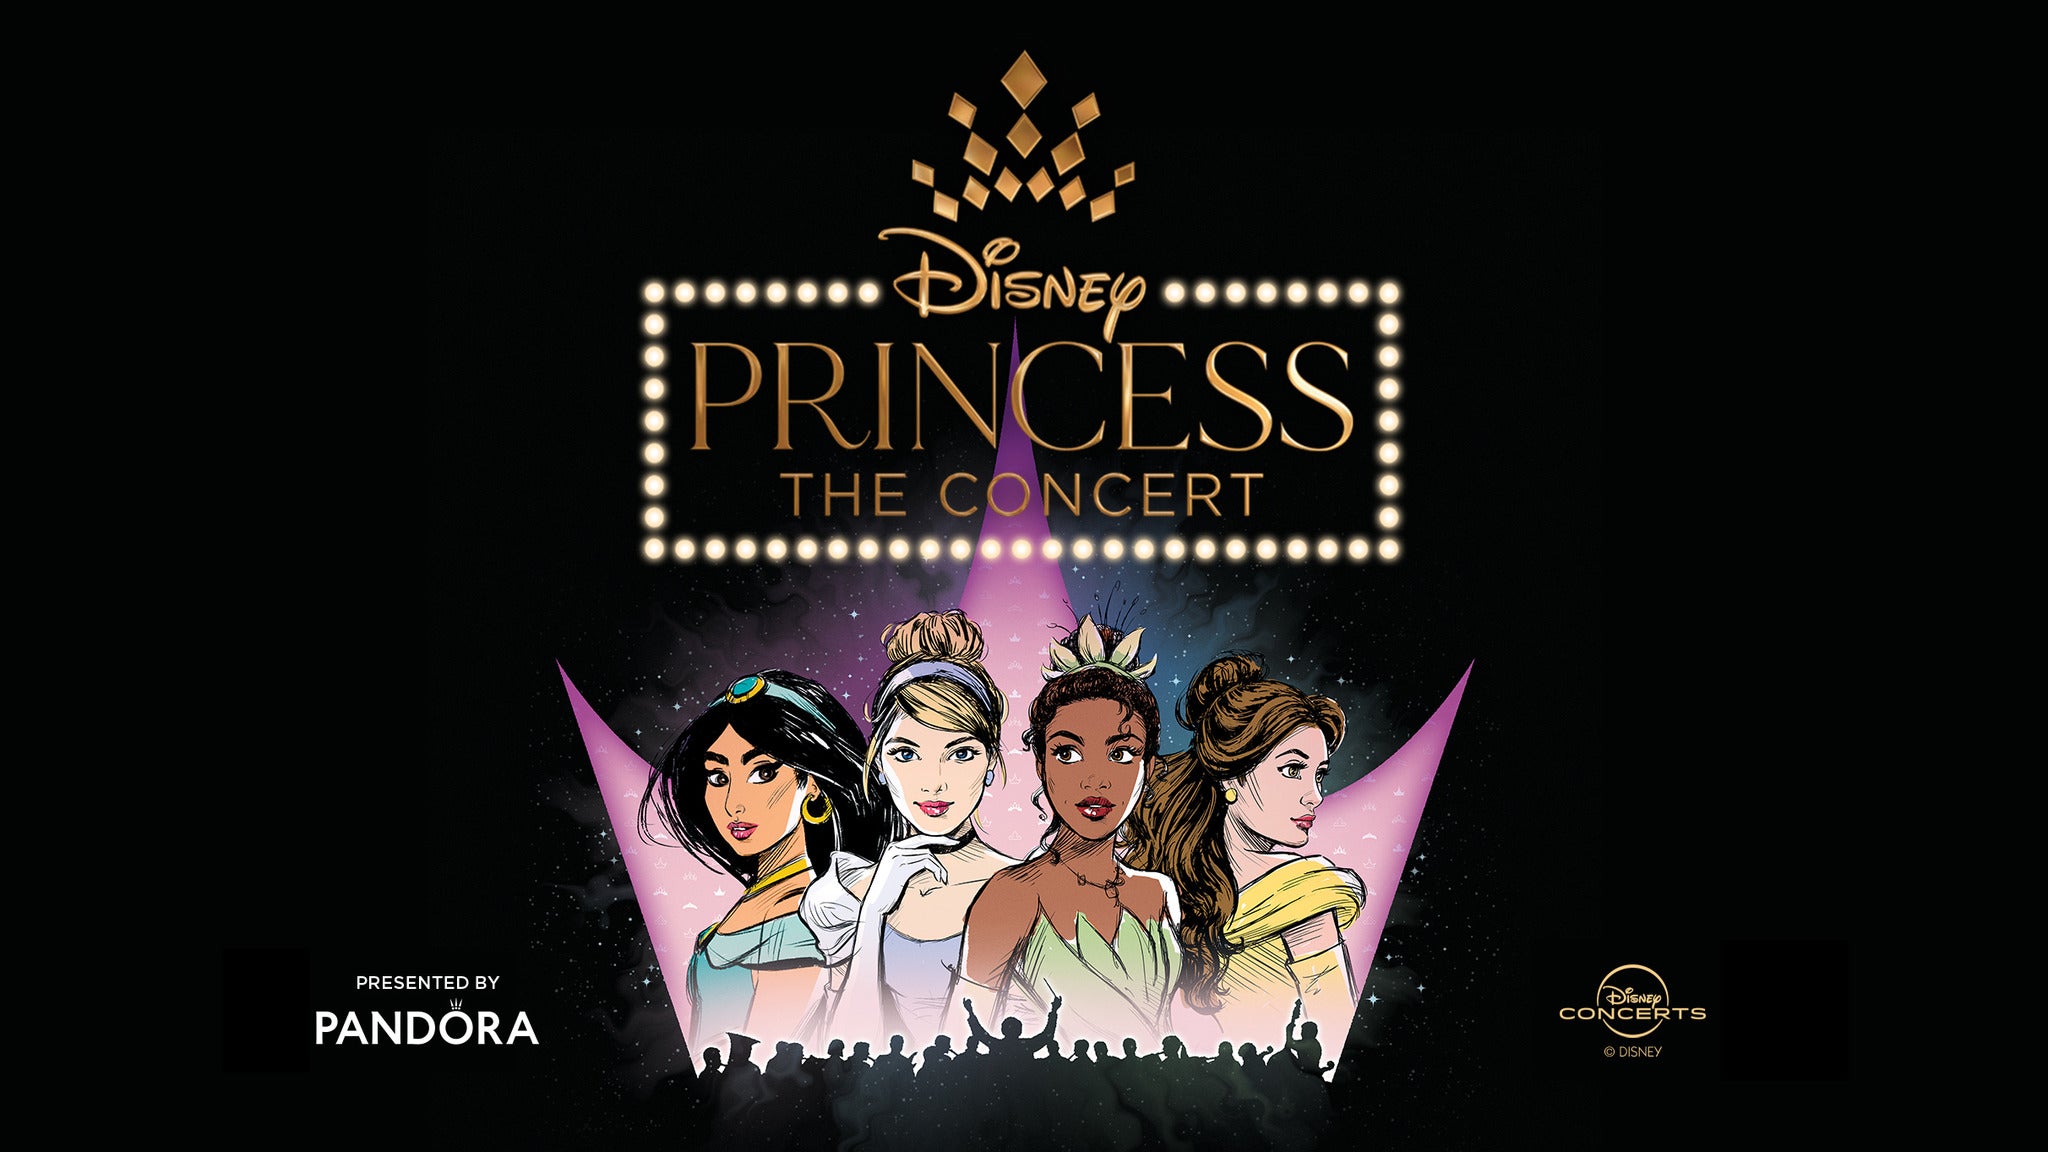 Disney Princess: The Concert at Bass Concert Hall